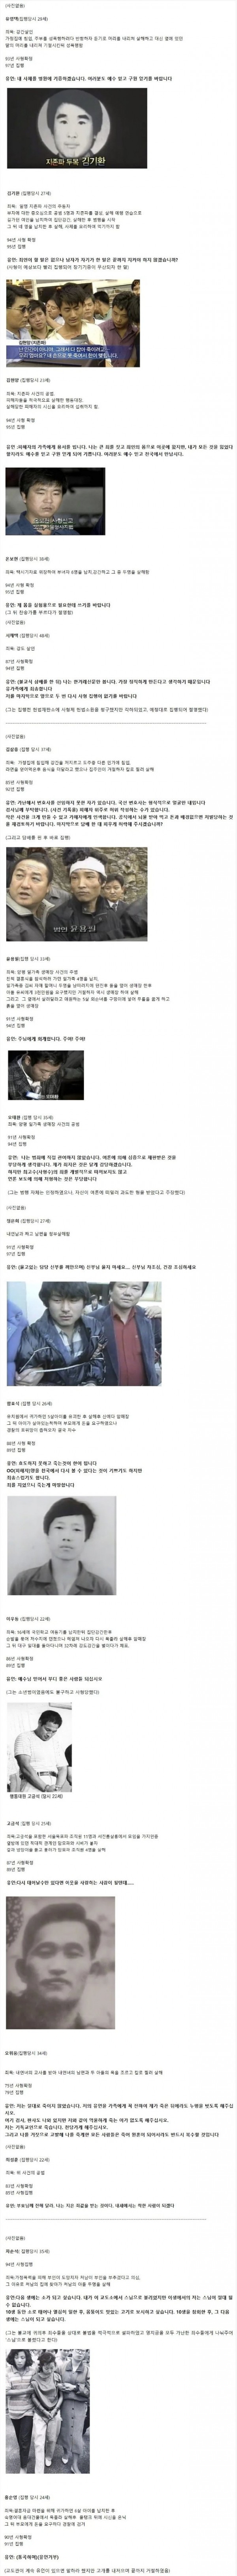 대한민국 사형수들의 마지막 유언